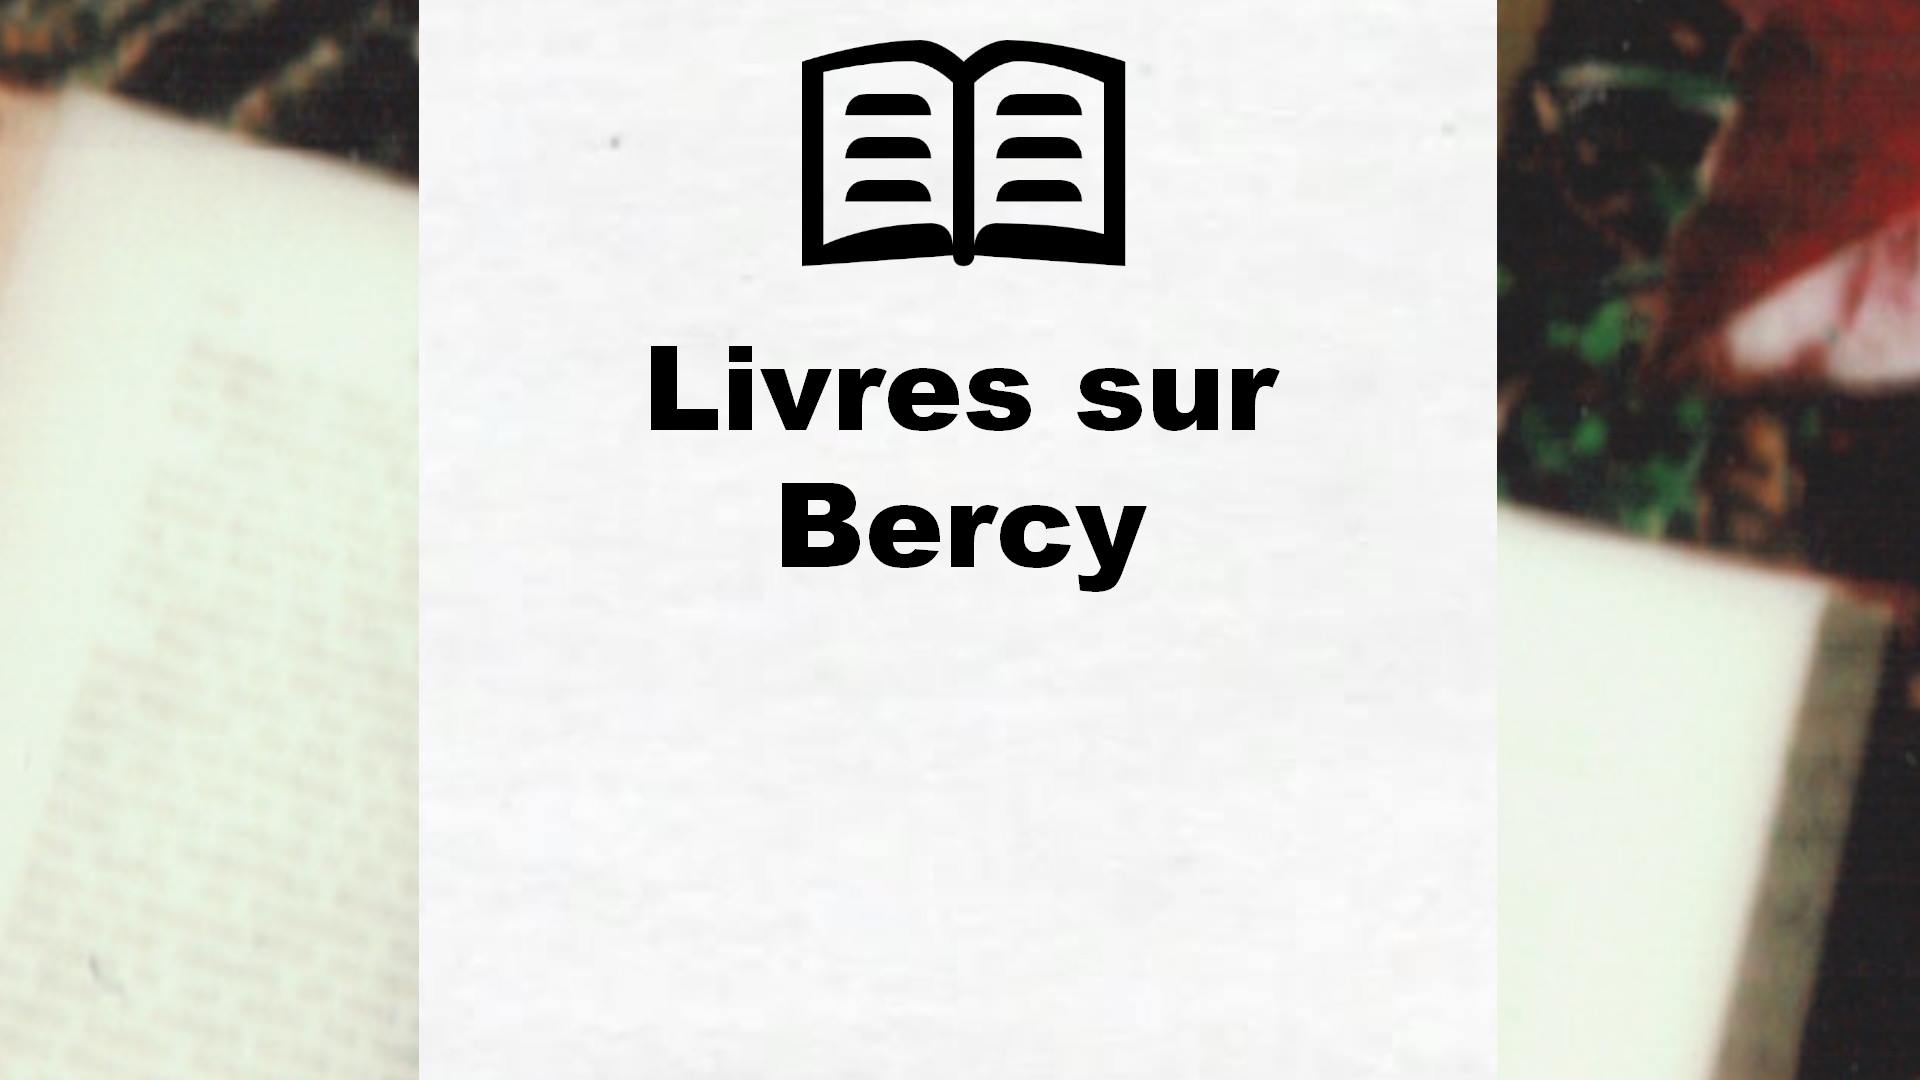 Livres sur Bercy